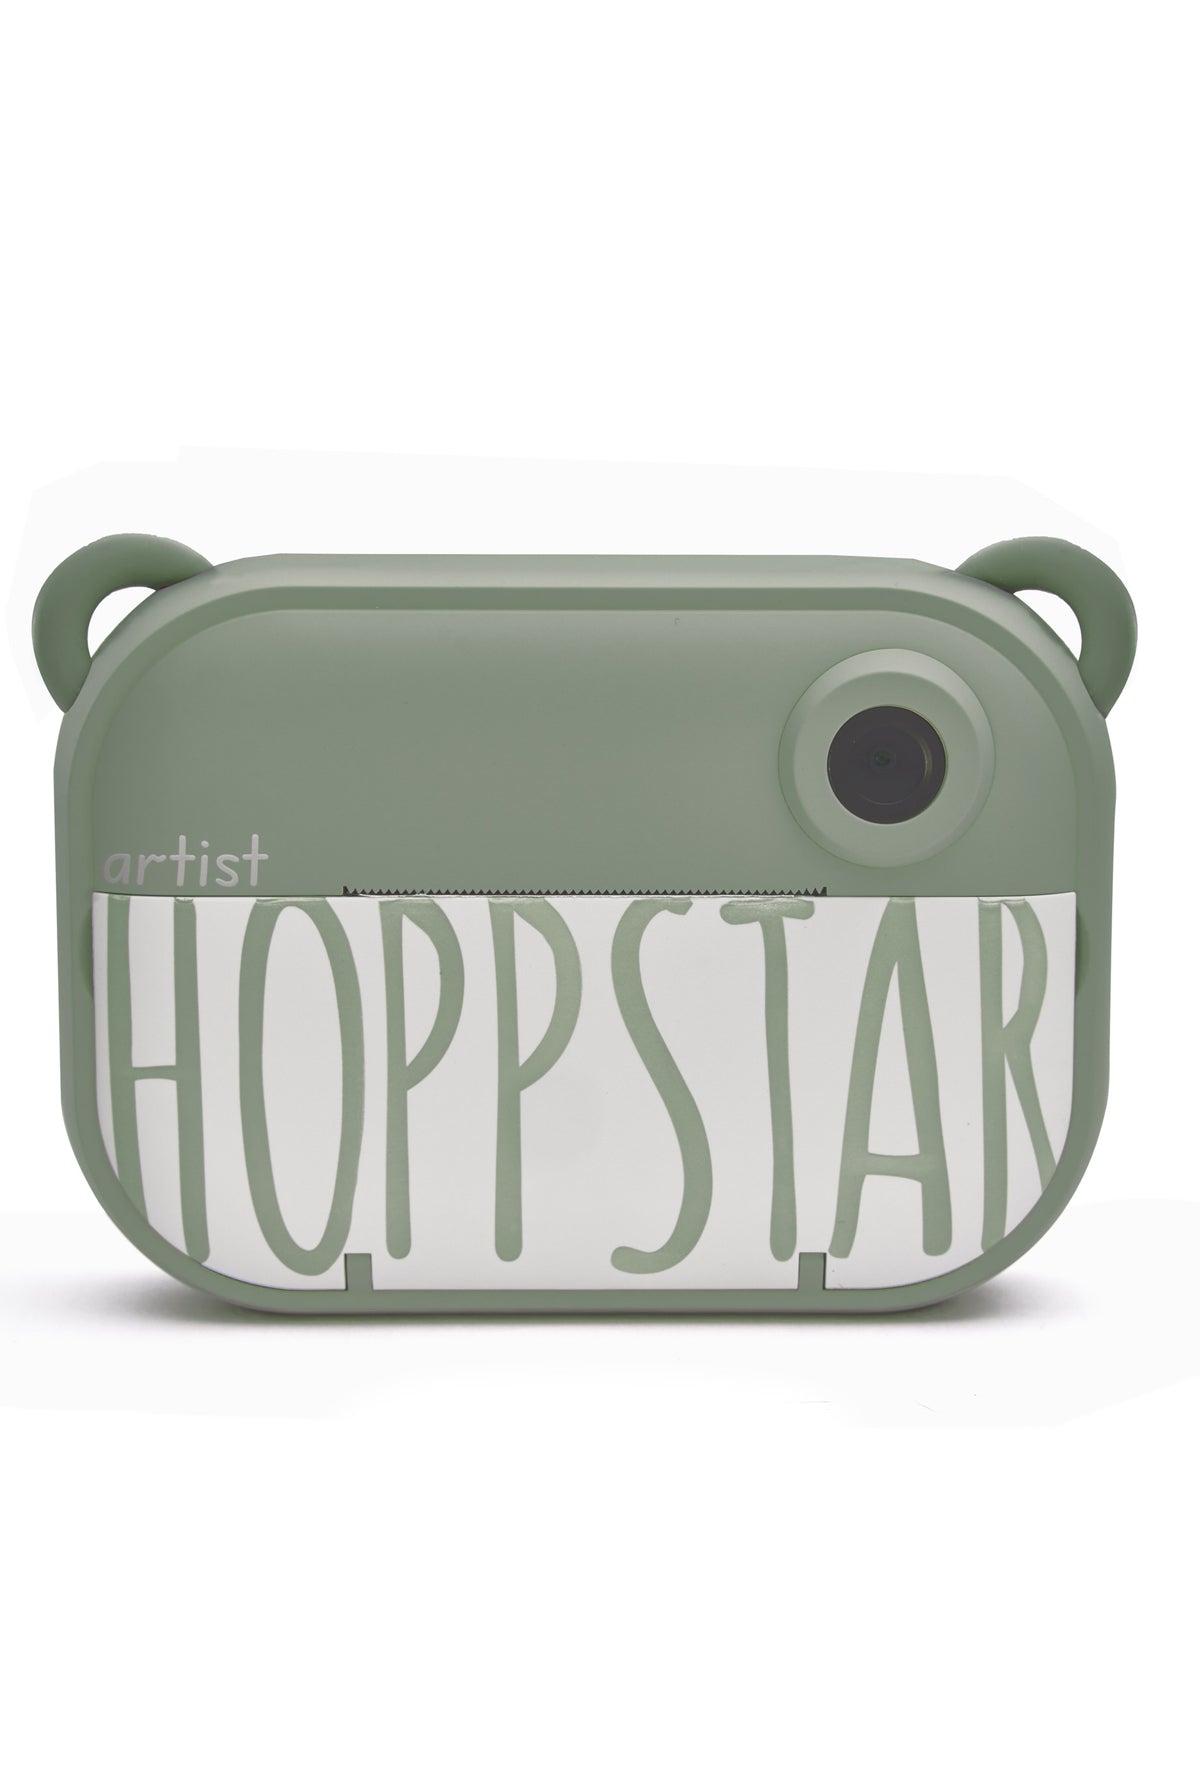 Hoppstar Artist Laurel Digital Camera